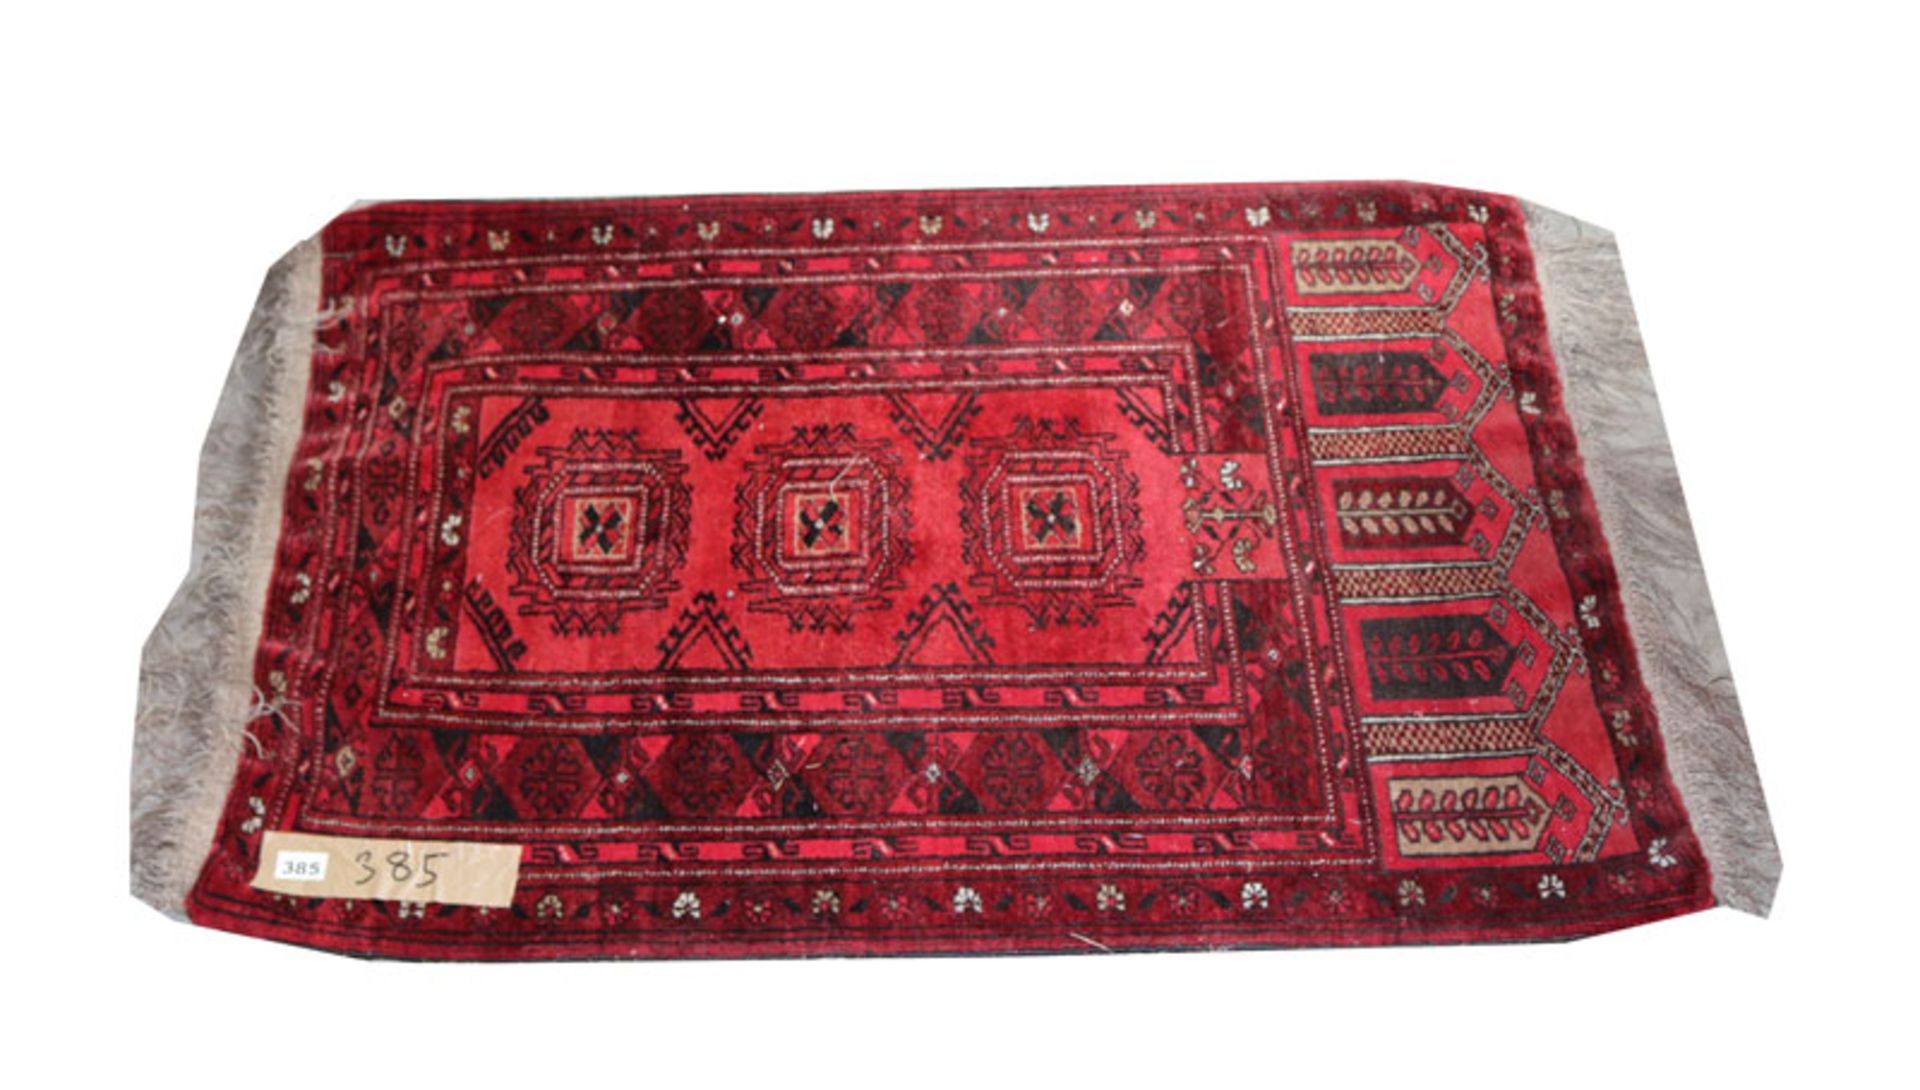 Brücke, Turkmene, rot/schwarz, Gebrauchsspuren, beschädigt, 127 cm x 78 cm